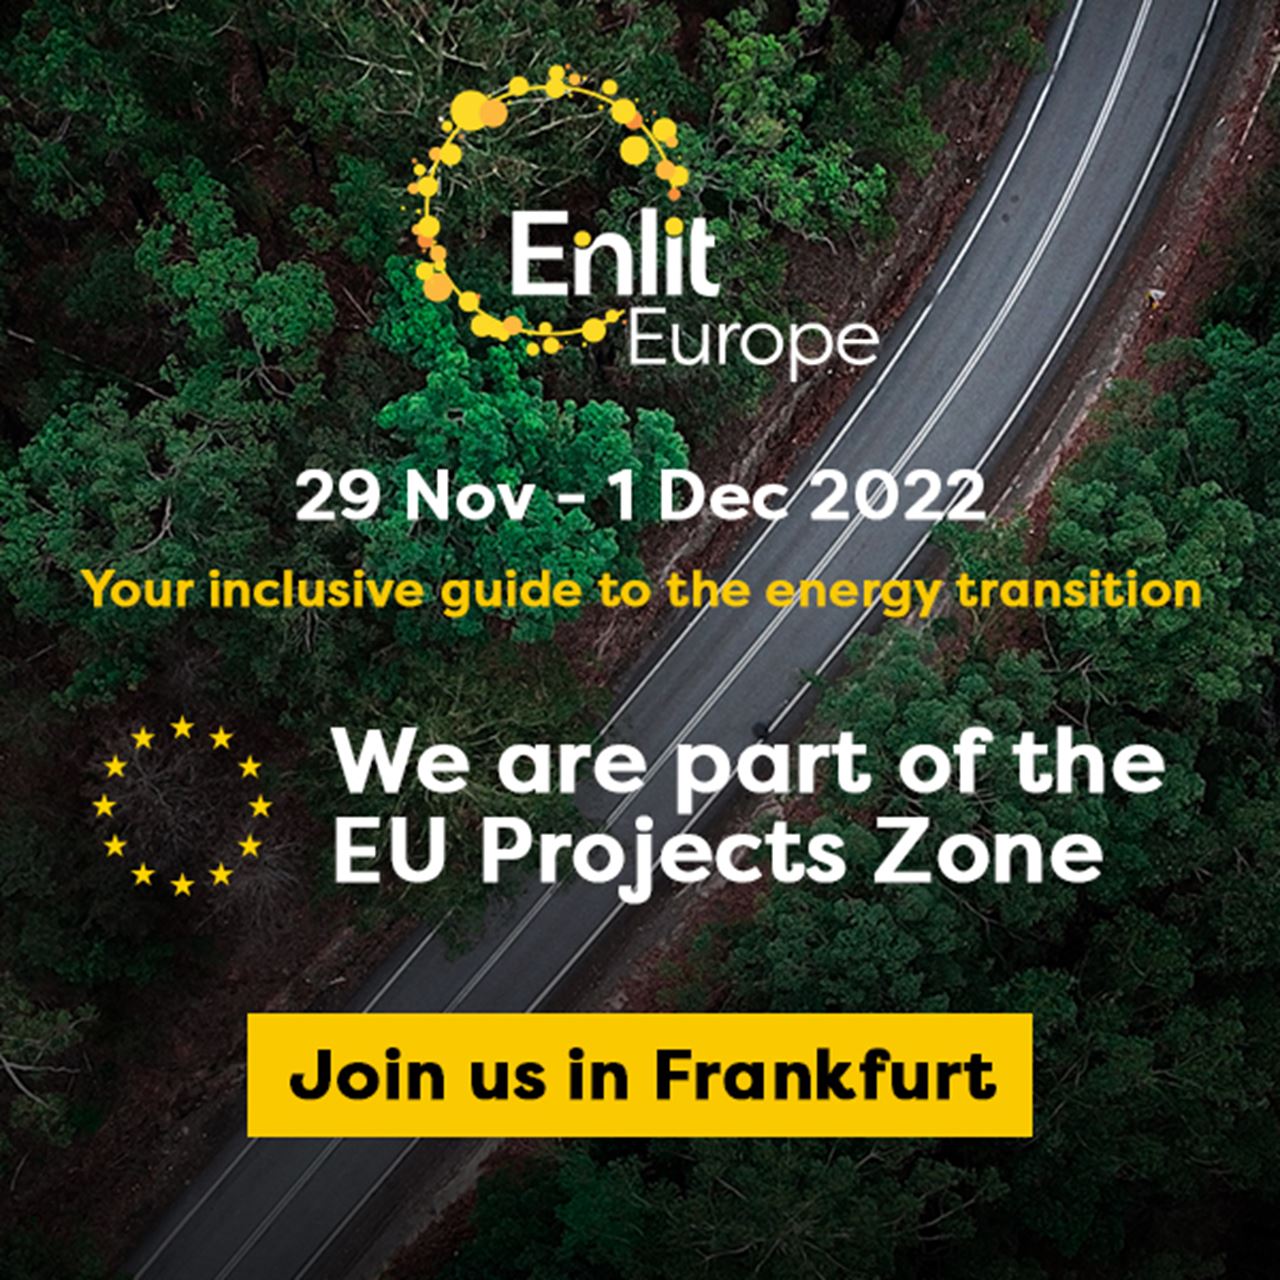 Enlit Europe promo image